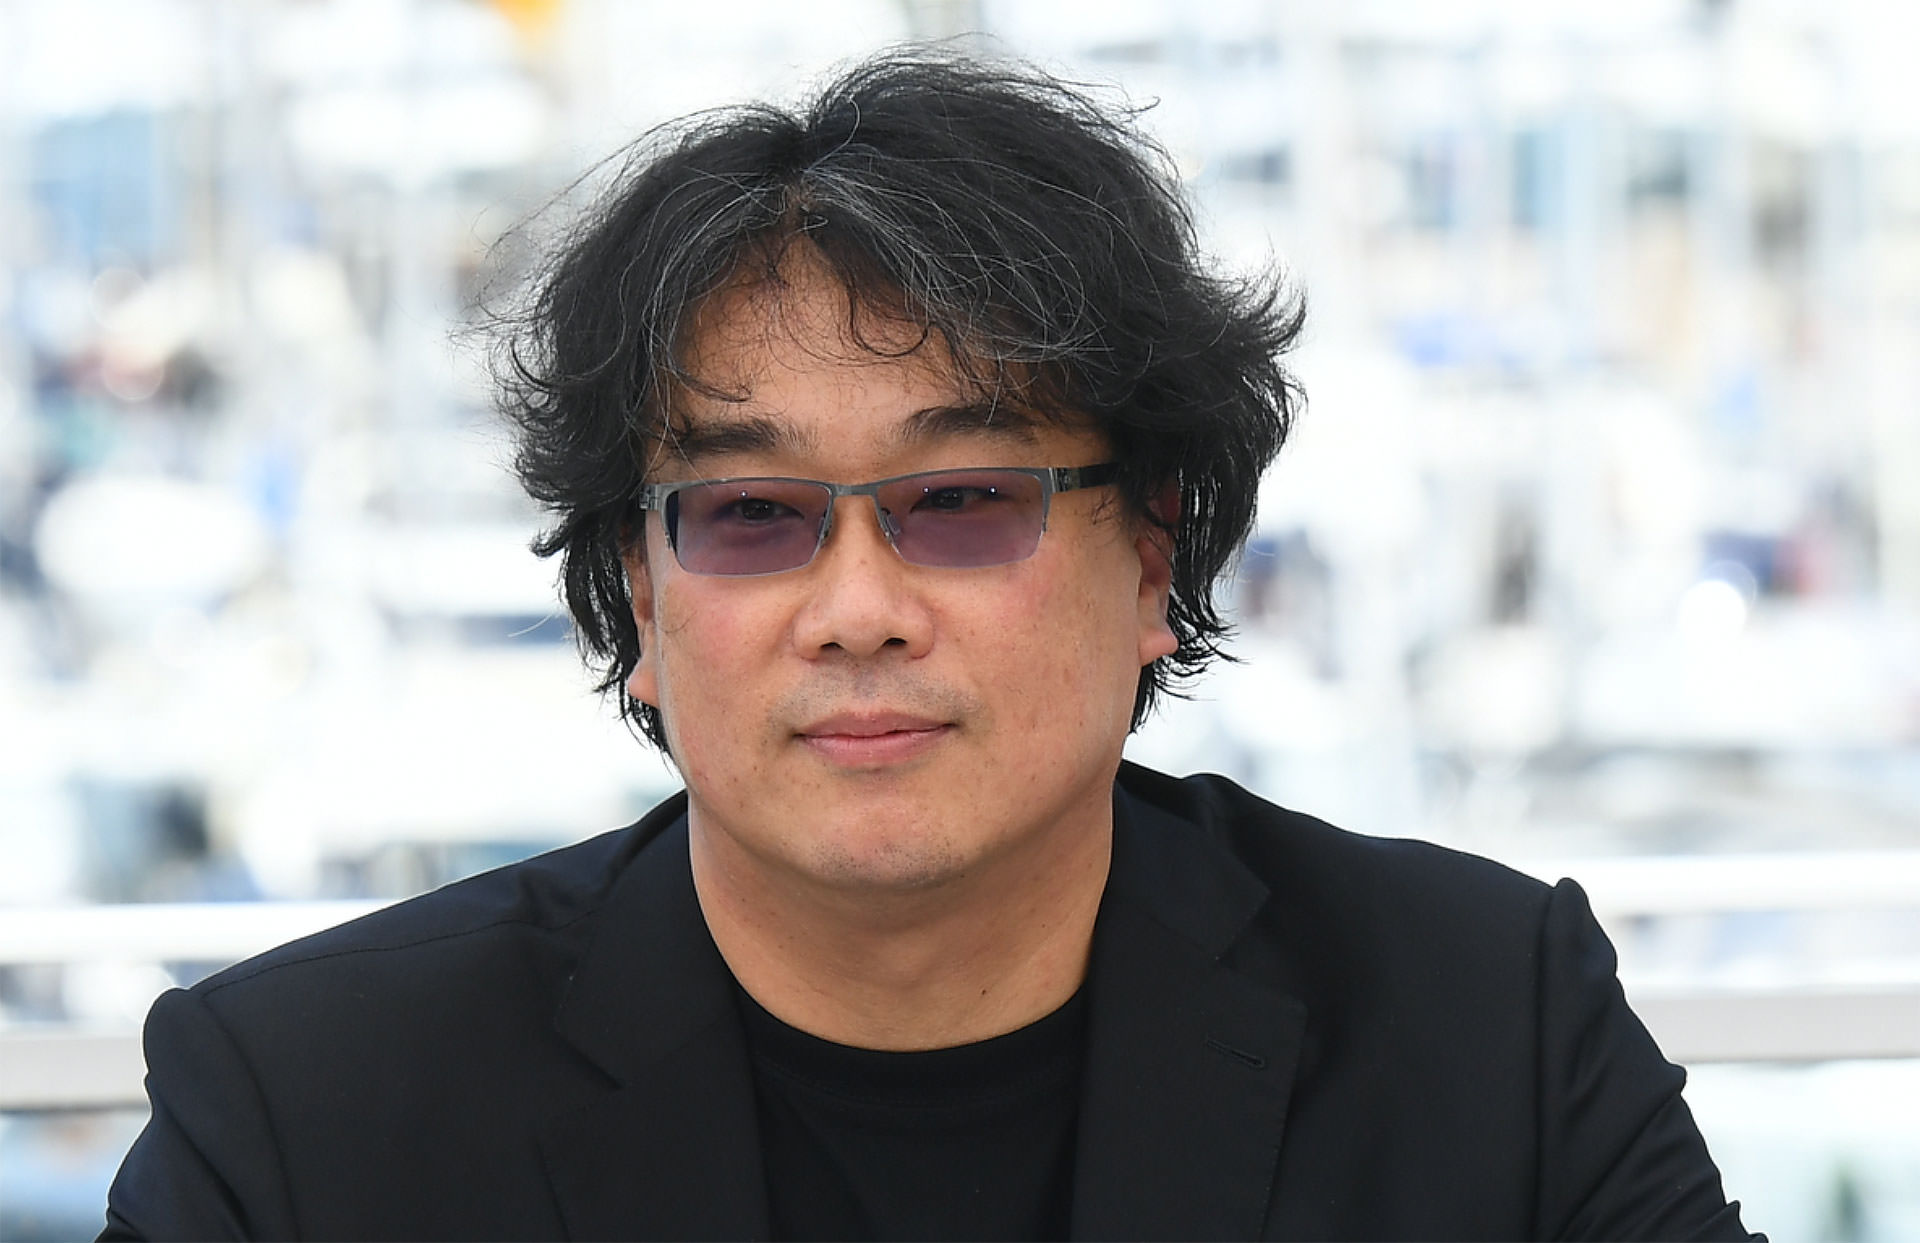 بونگ جون هو کارگردان فیلم انگل در جشنواره کن